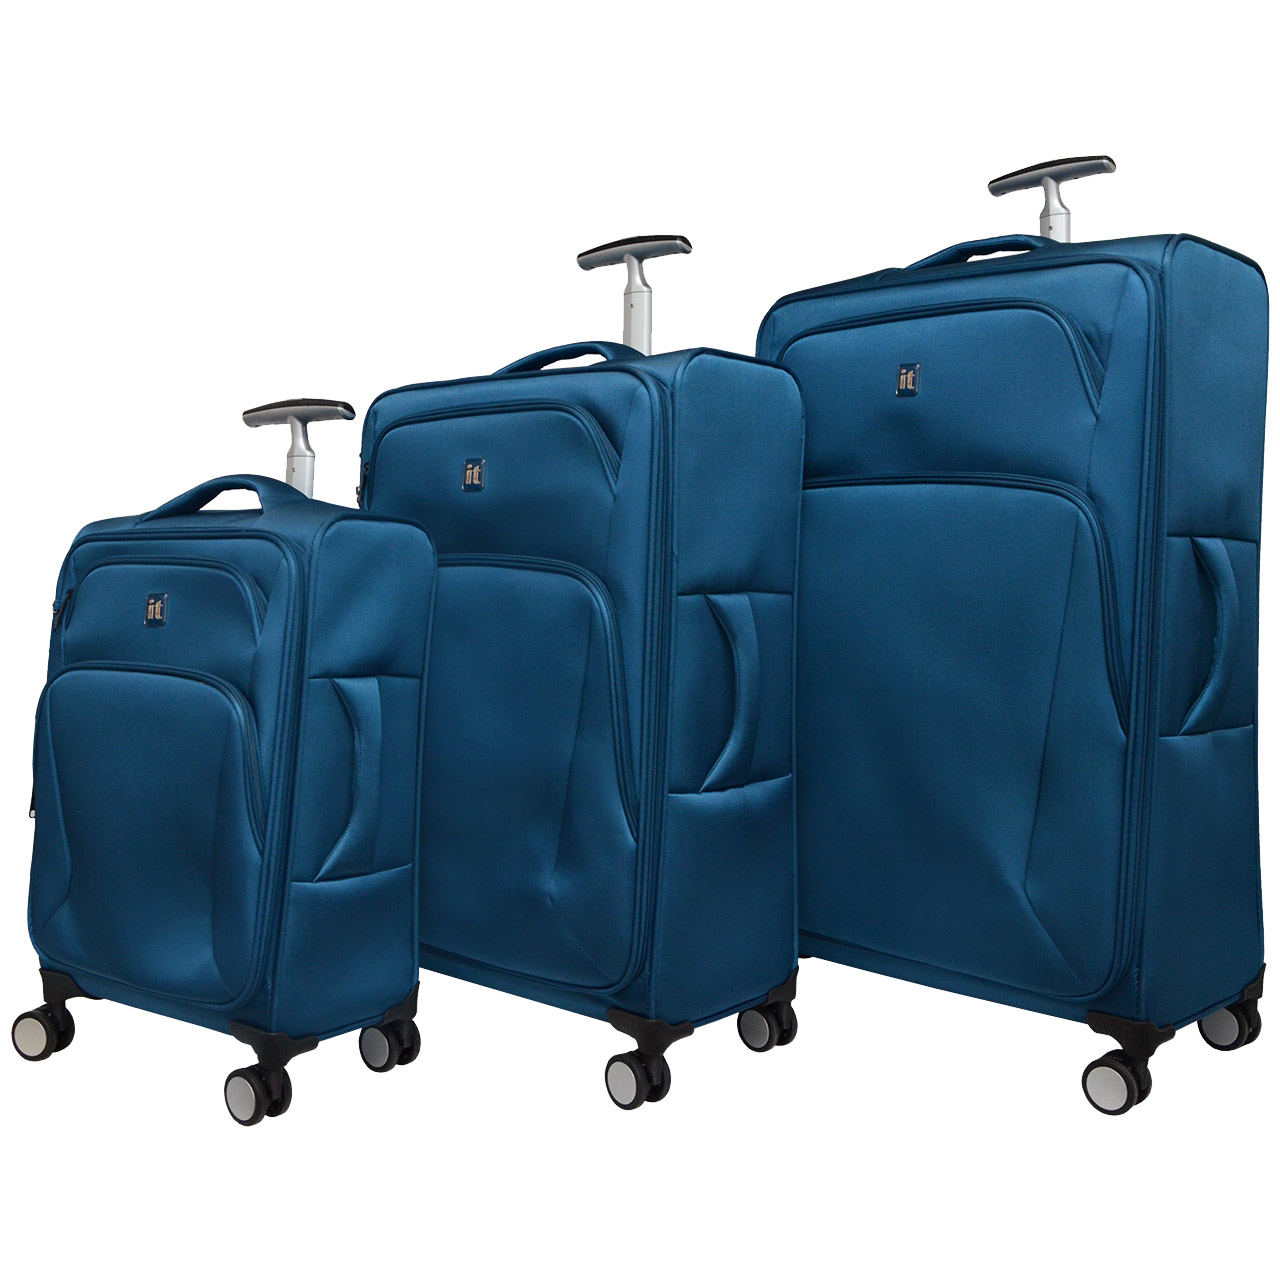 مجموعه سه عددی چمدان آی تی مدل 2019